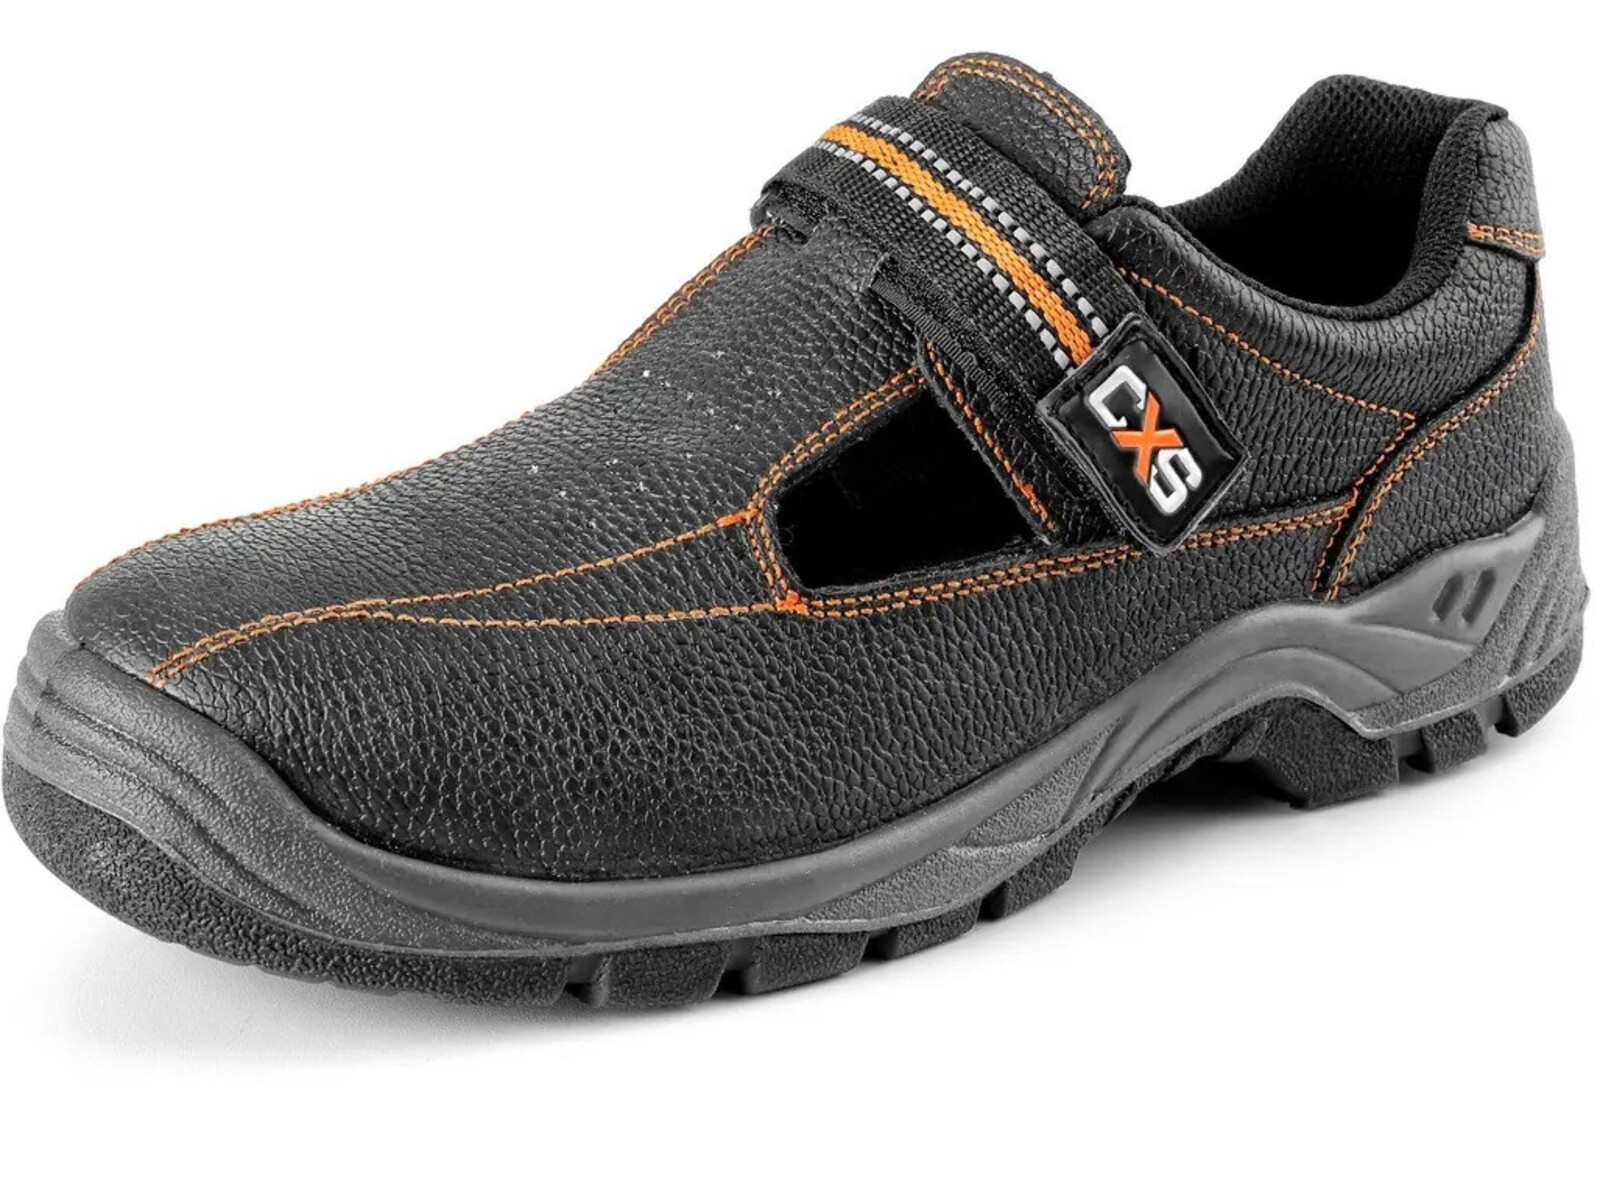 Pracovné sandále CXS Stone Nefrit O1 FO SRC - veľkosť: 42, farba: čierna/oranžová